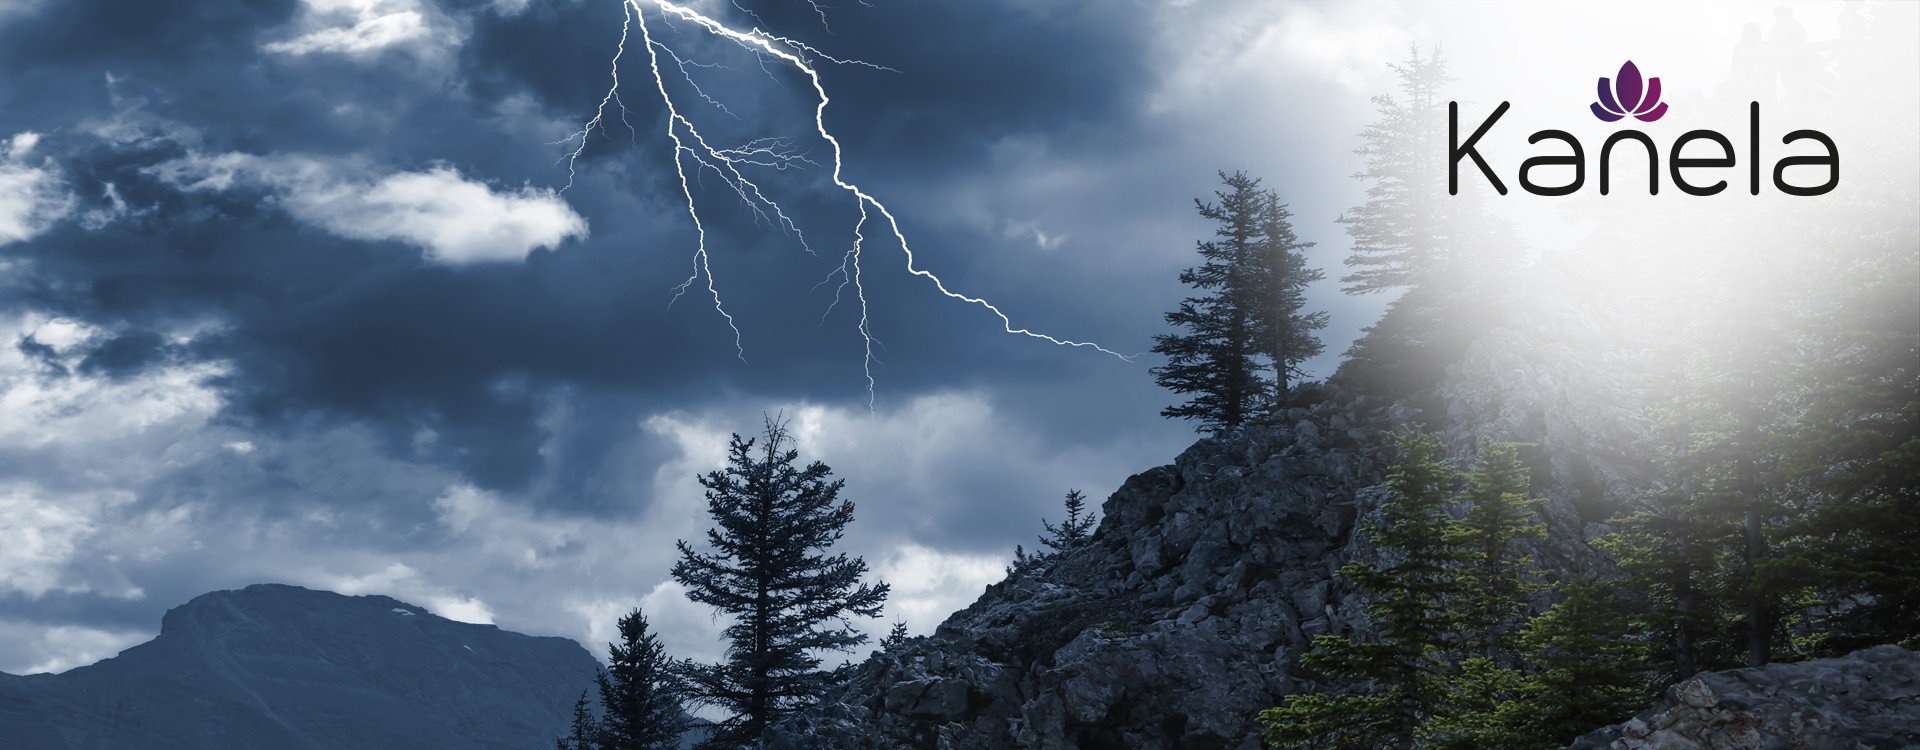 Surpris par un orage dans les montagnes - comment vous devez vous comporter maintenant